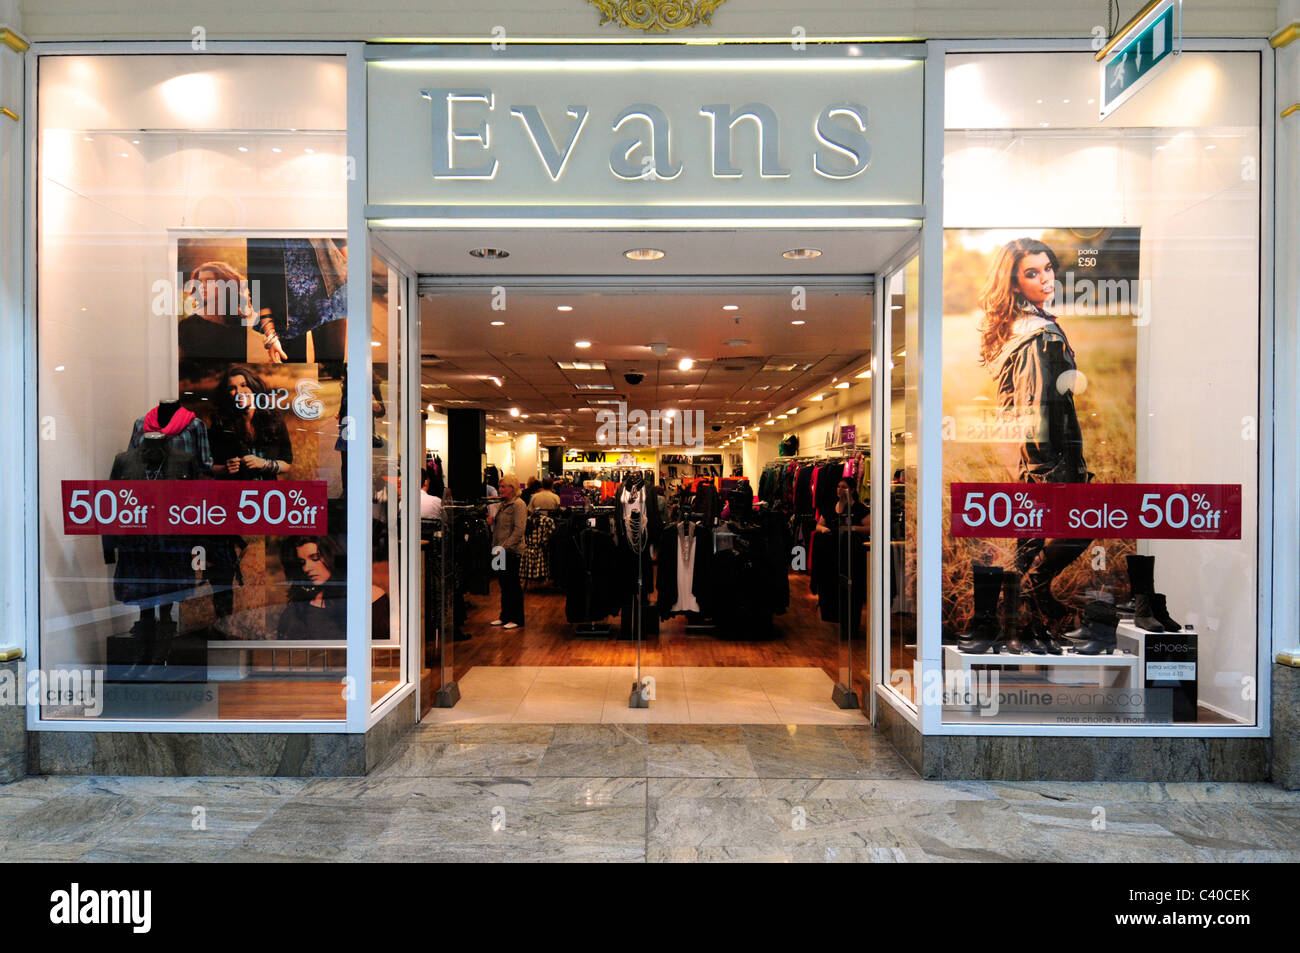 evans clothes garment woman womans girl female ladies tailor suit Stock Photo